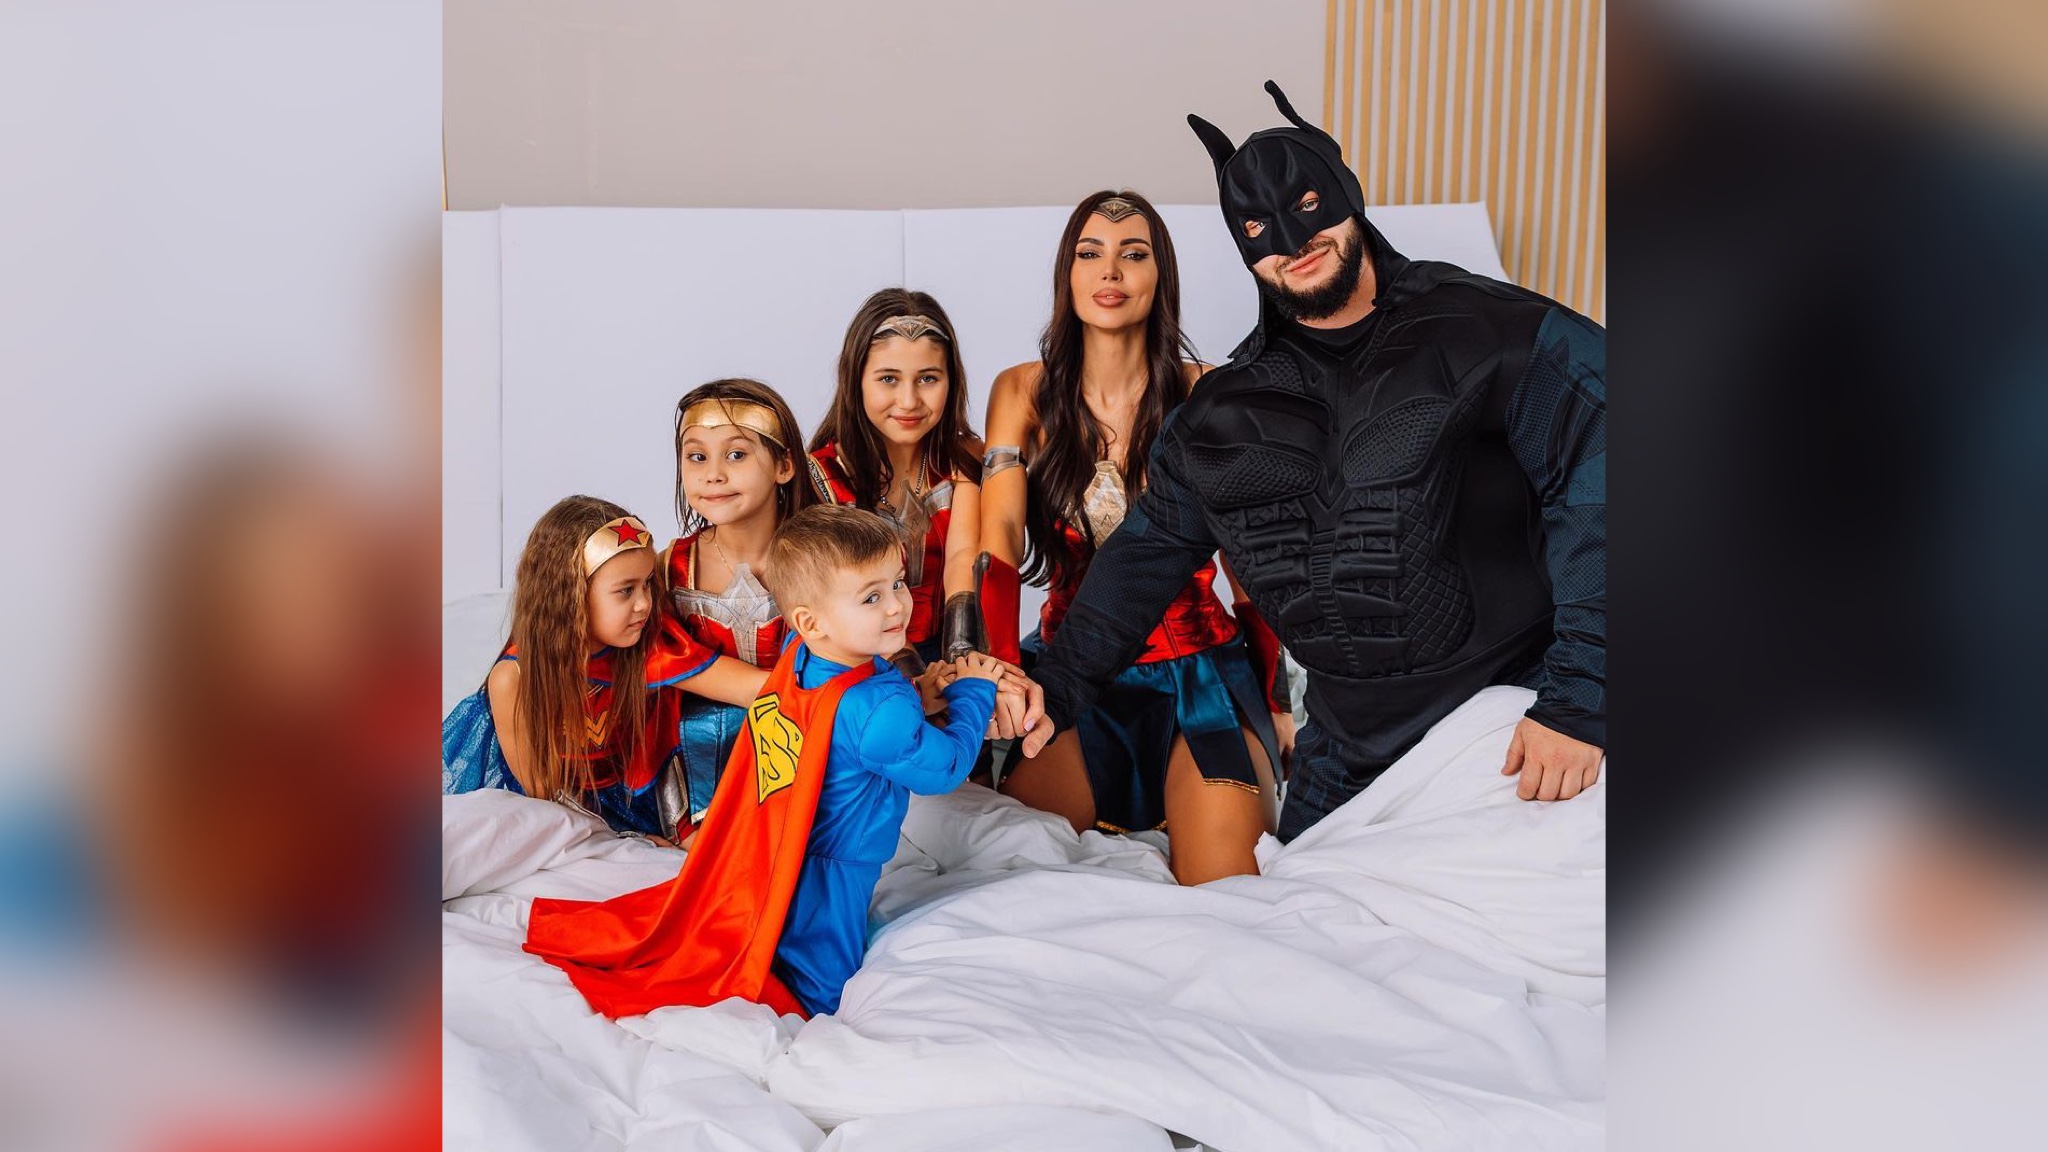 Оксана Самойлова в наряде Чудо-женщины и Джиган в образе Бэтмена с детьми. Фото © Instagram (запрещён на территории Российской Федерации) / samoylovaoxana